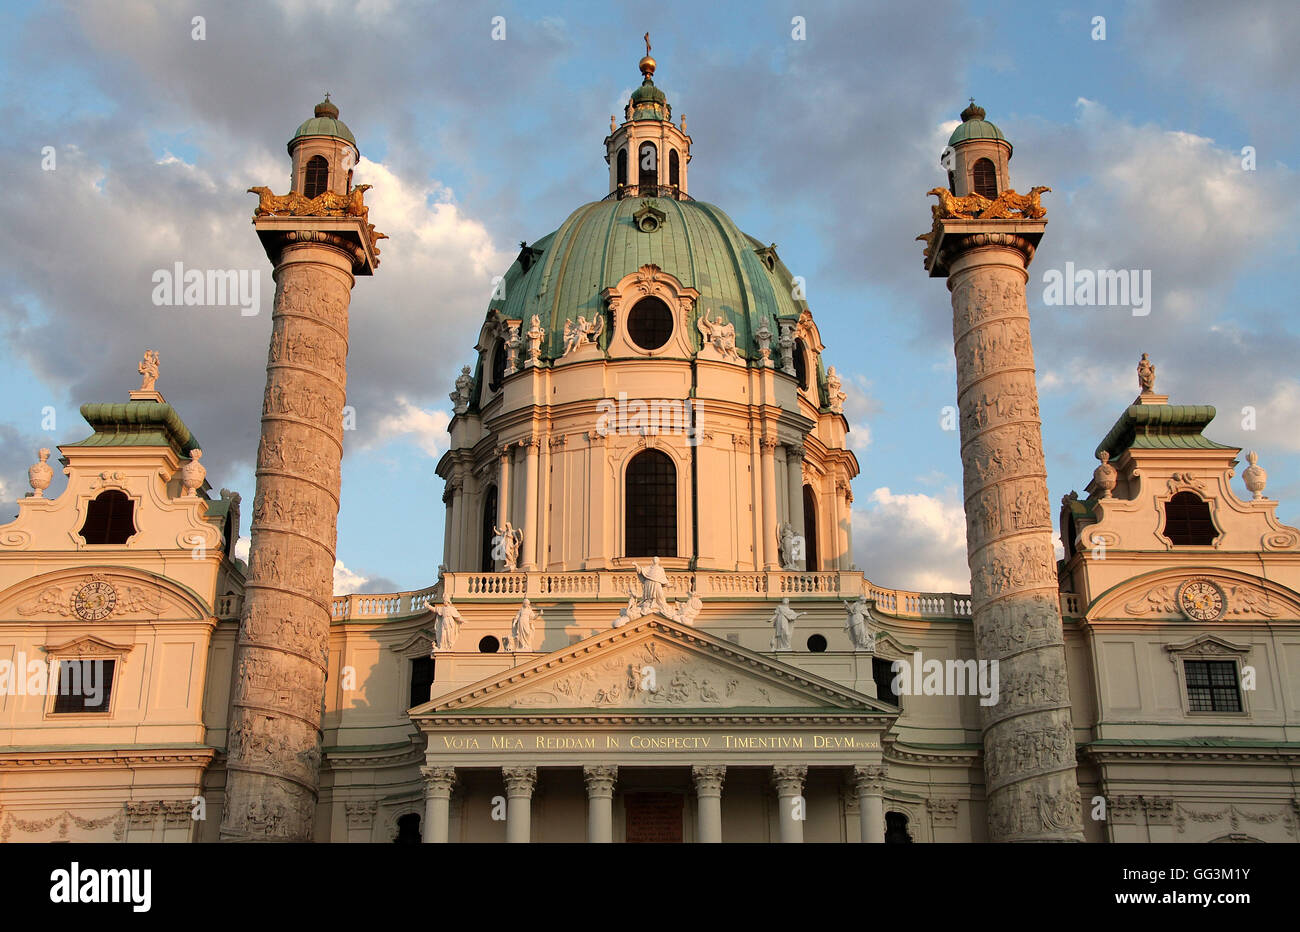 Coupole de l'église de Saint Charles à Vienne par l'architecte baroque Johann Bernhard Fischer von Erlach Banque D'Images